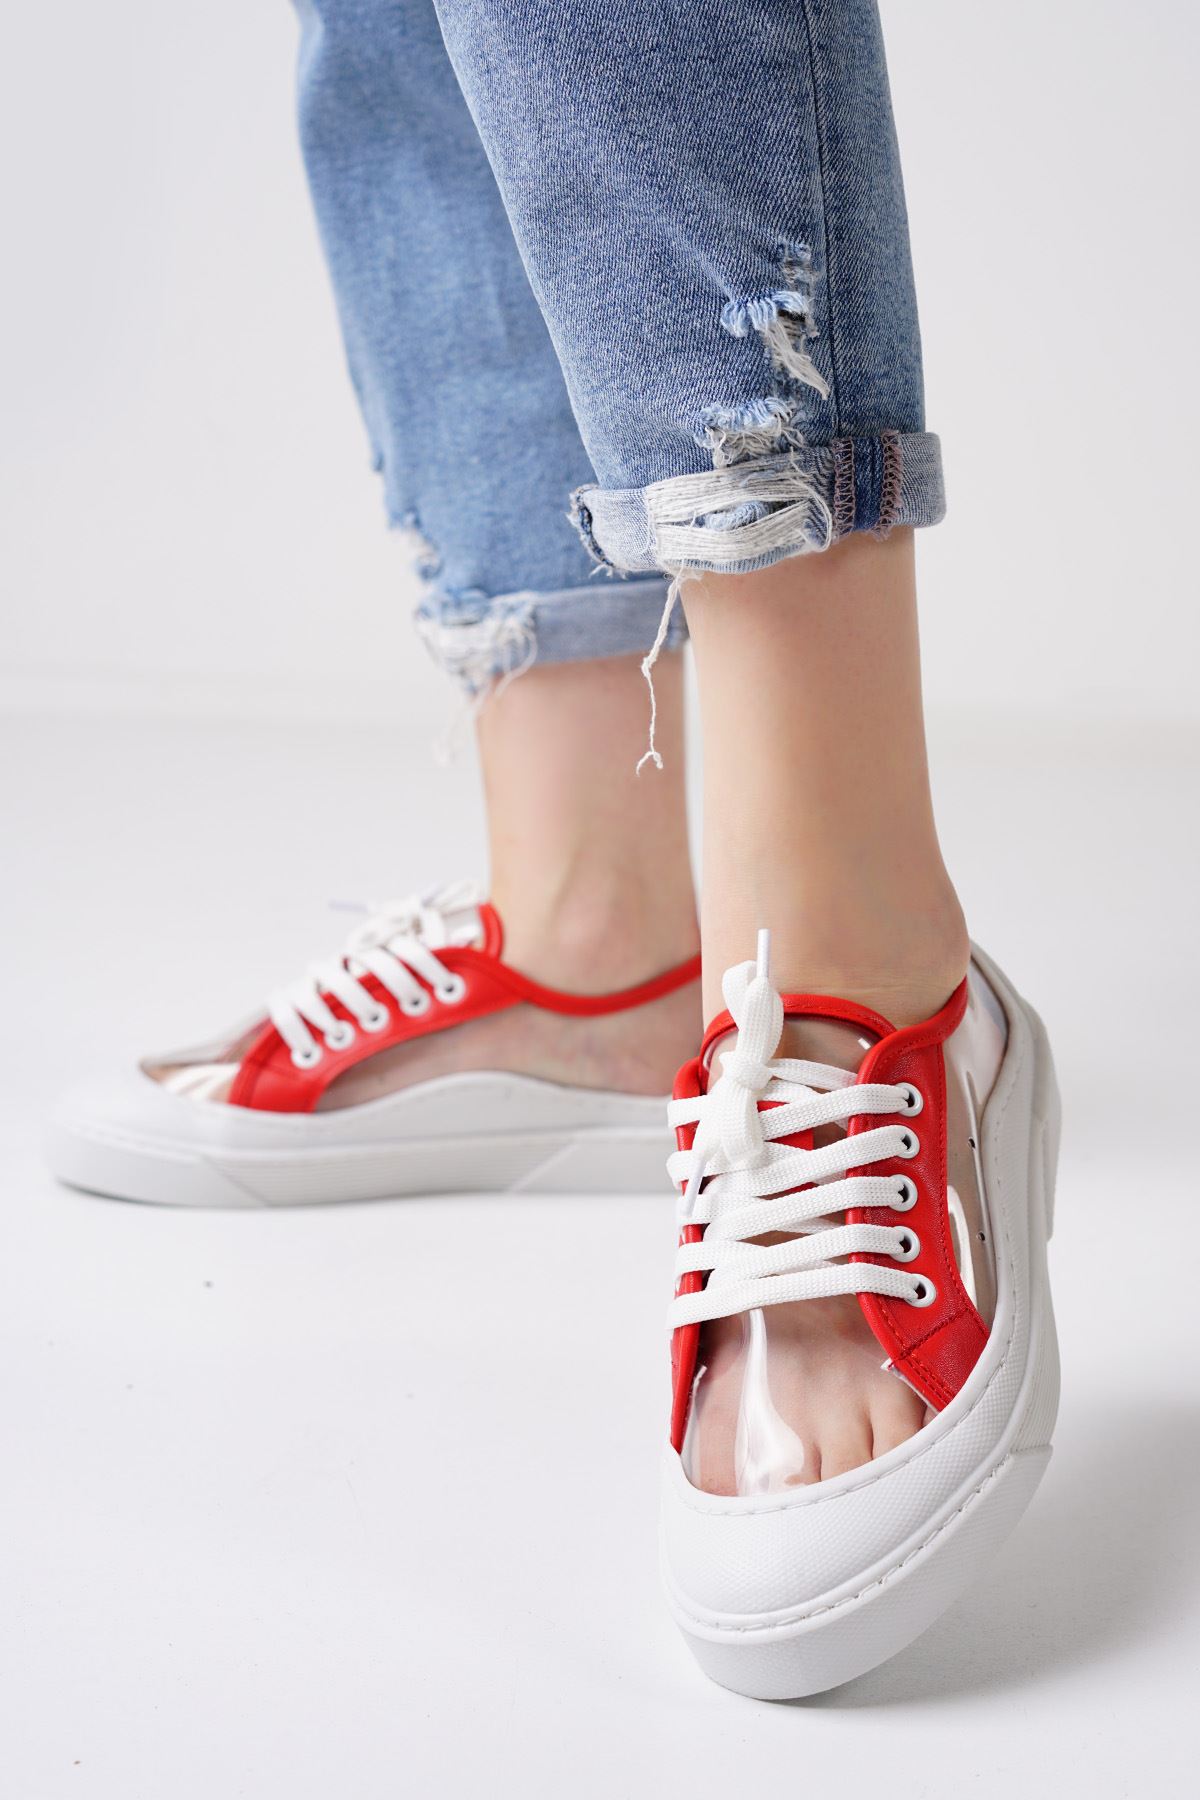 Flufy Beyaz Kırmızı Şeffaf Kadın Spor Ayakkabı